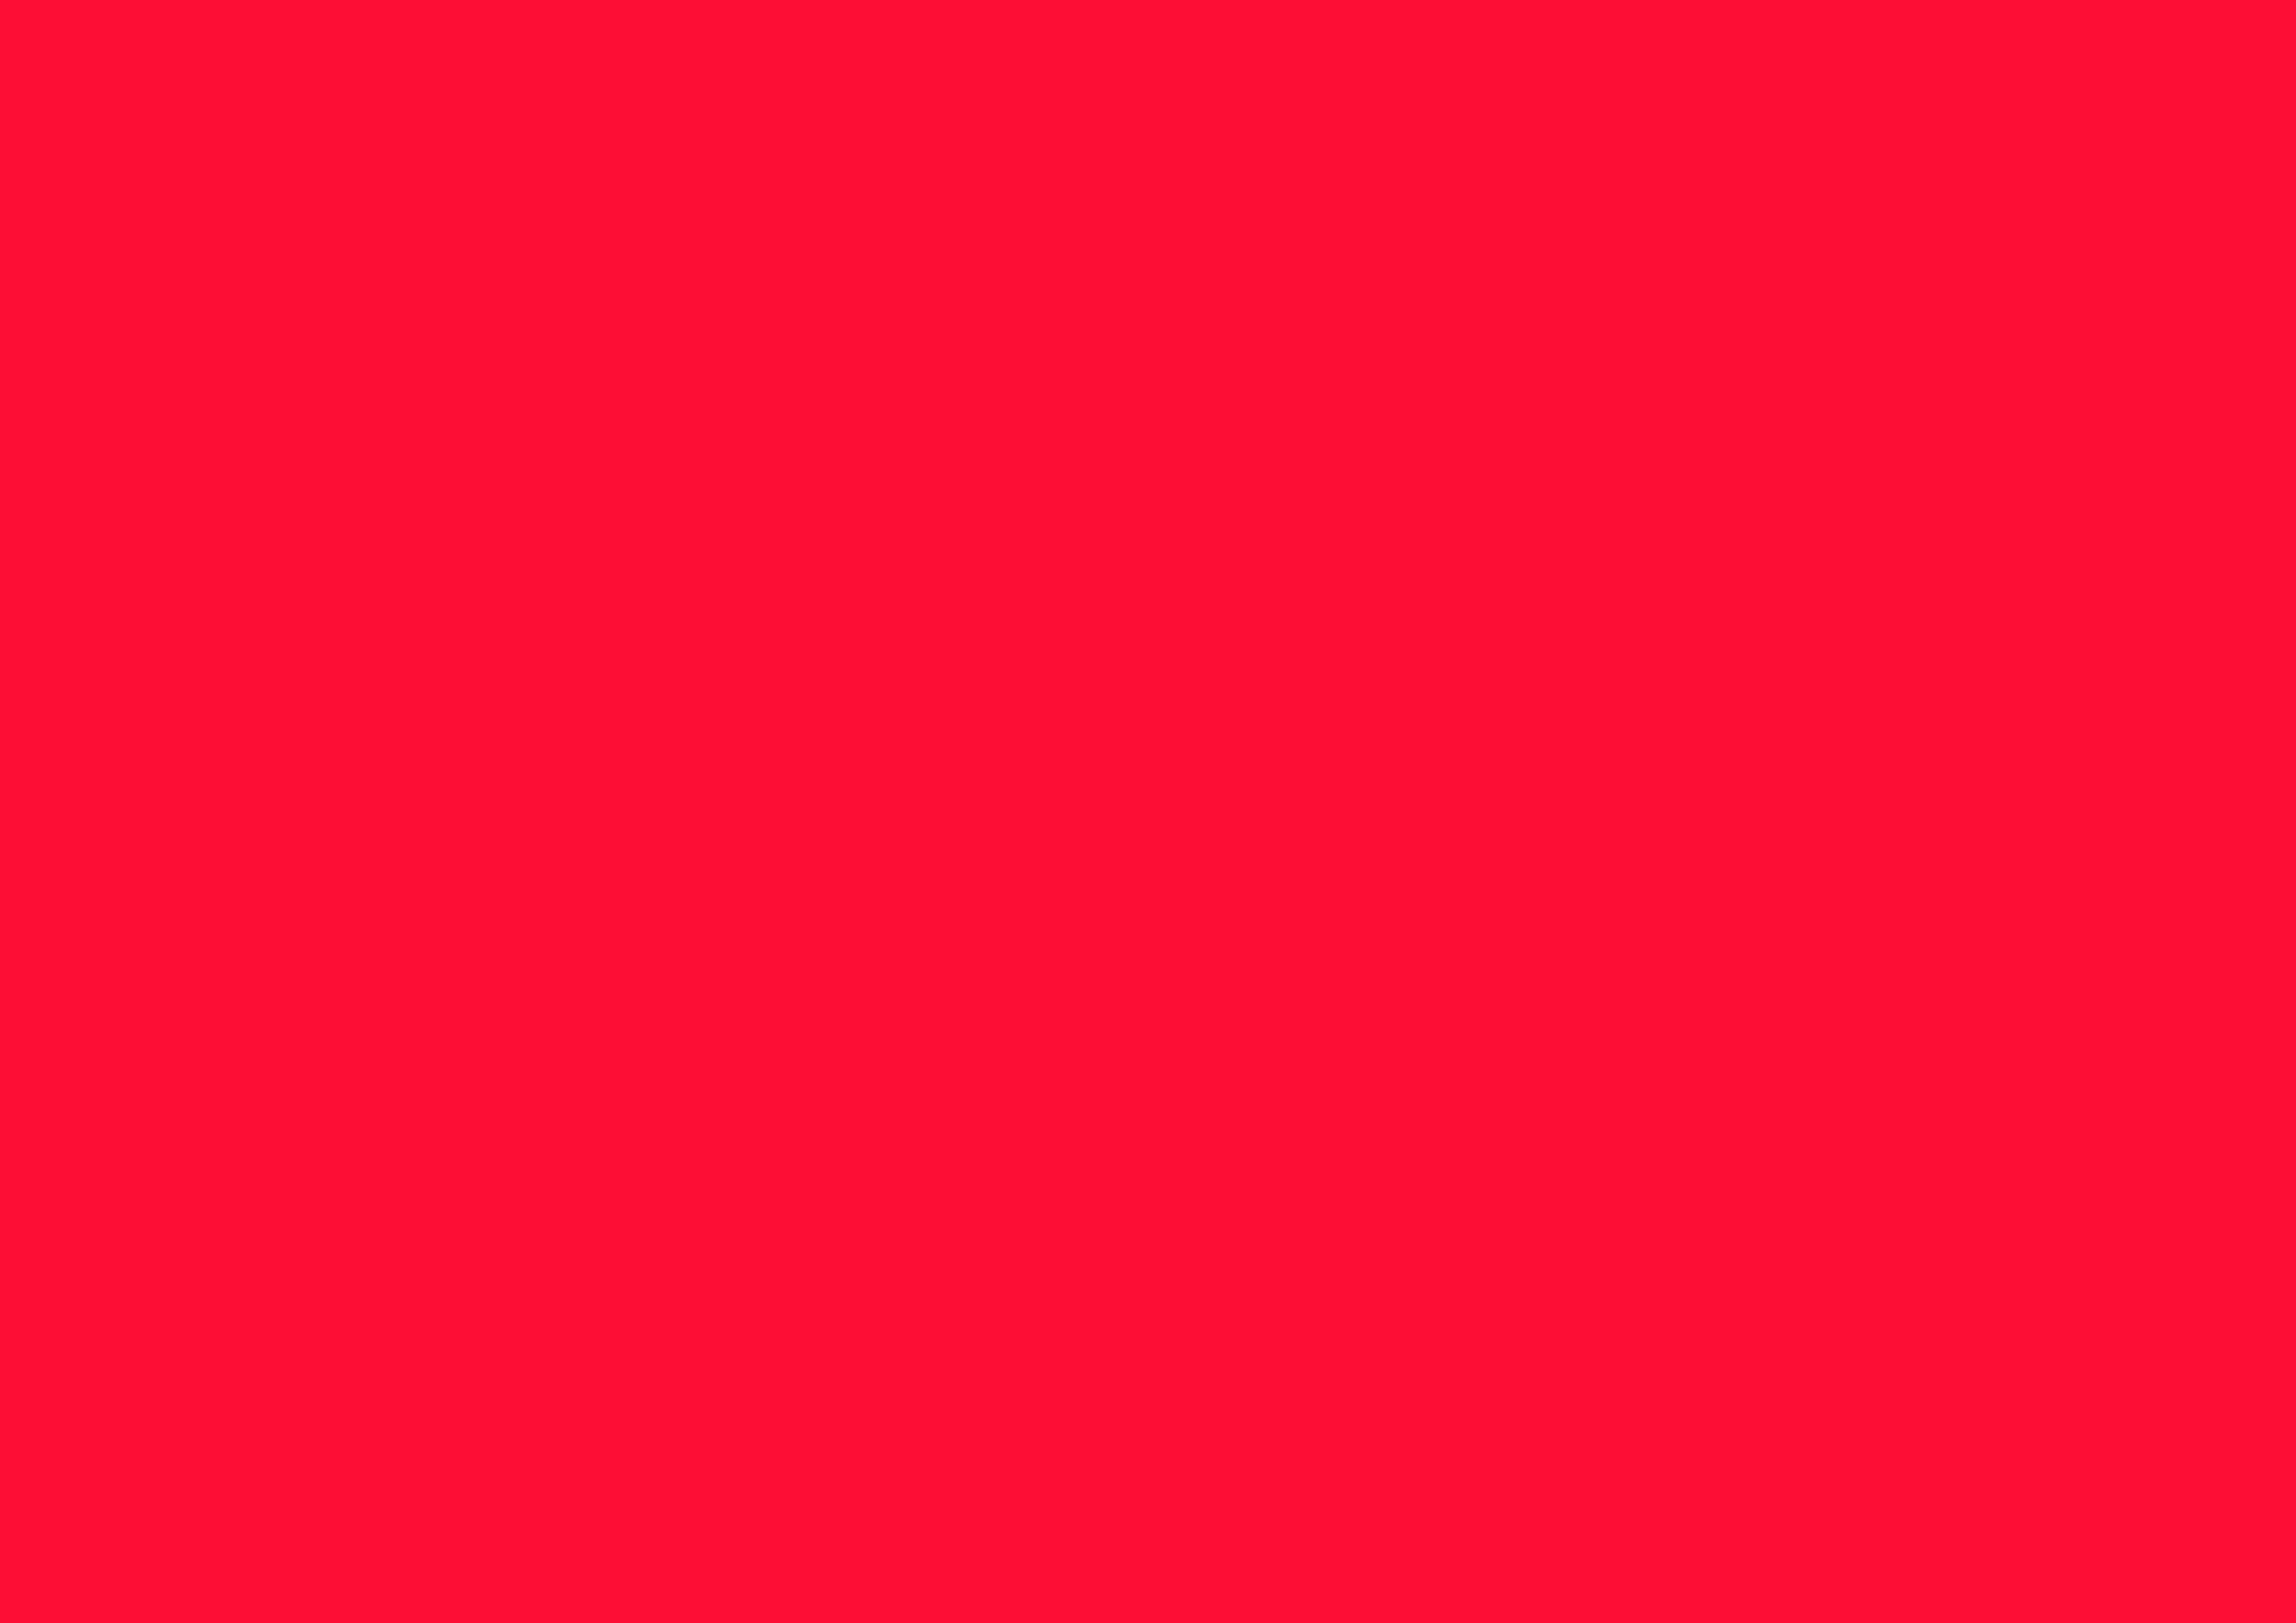 3508x2480 Scarlet Crayola Solid Color Background